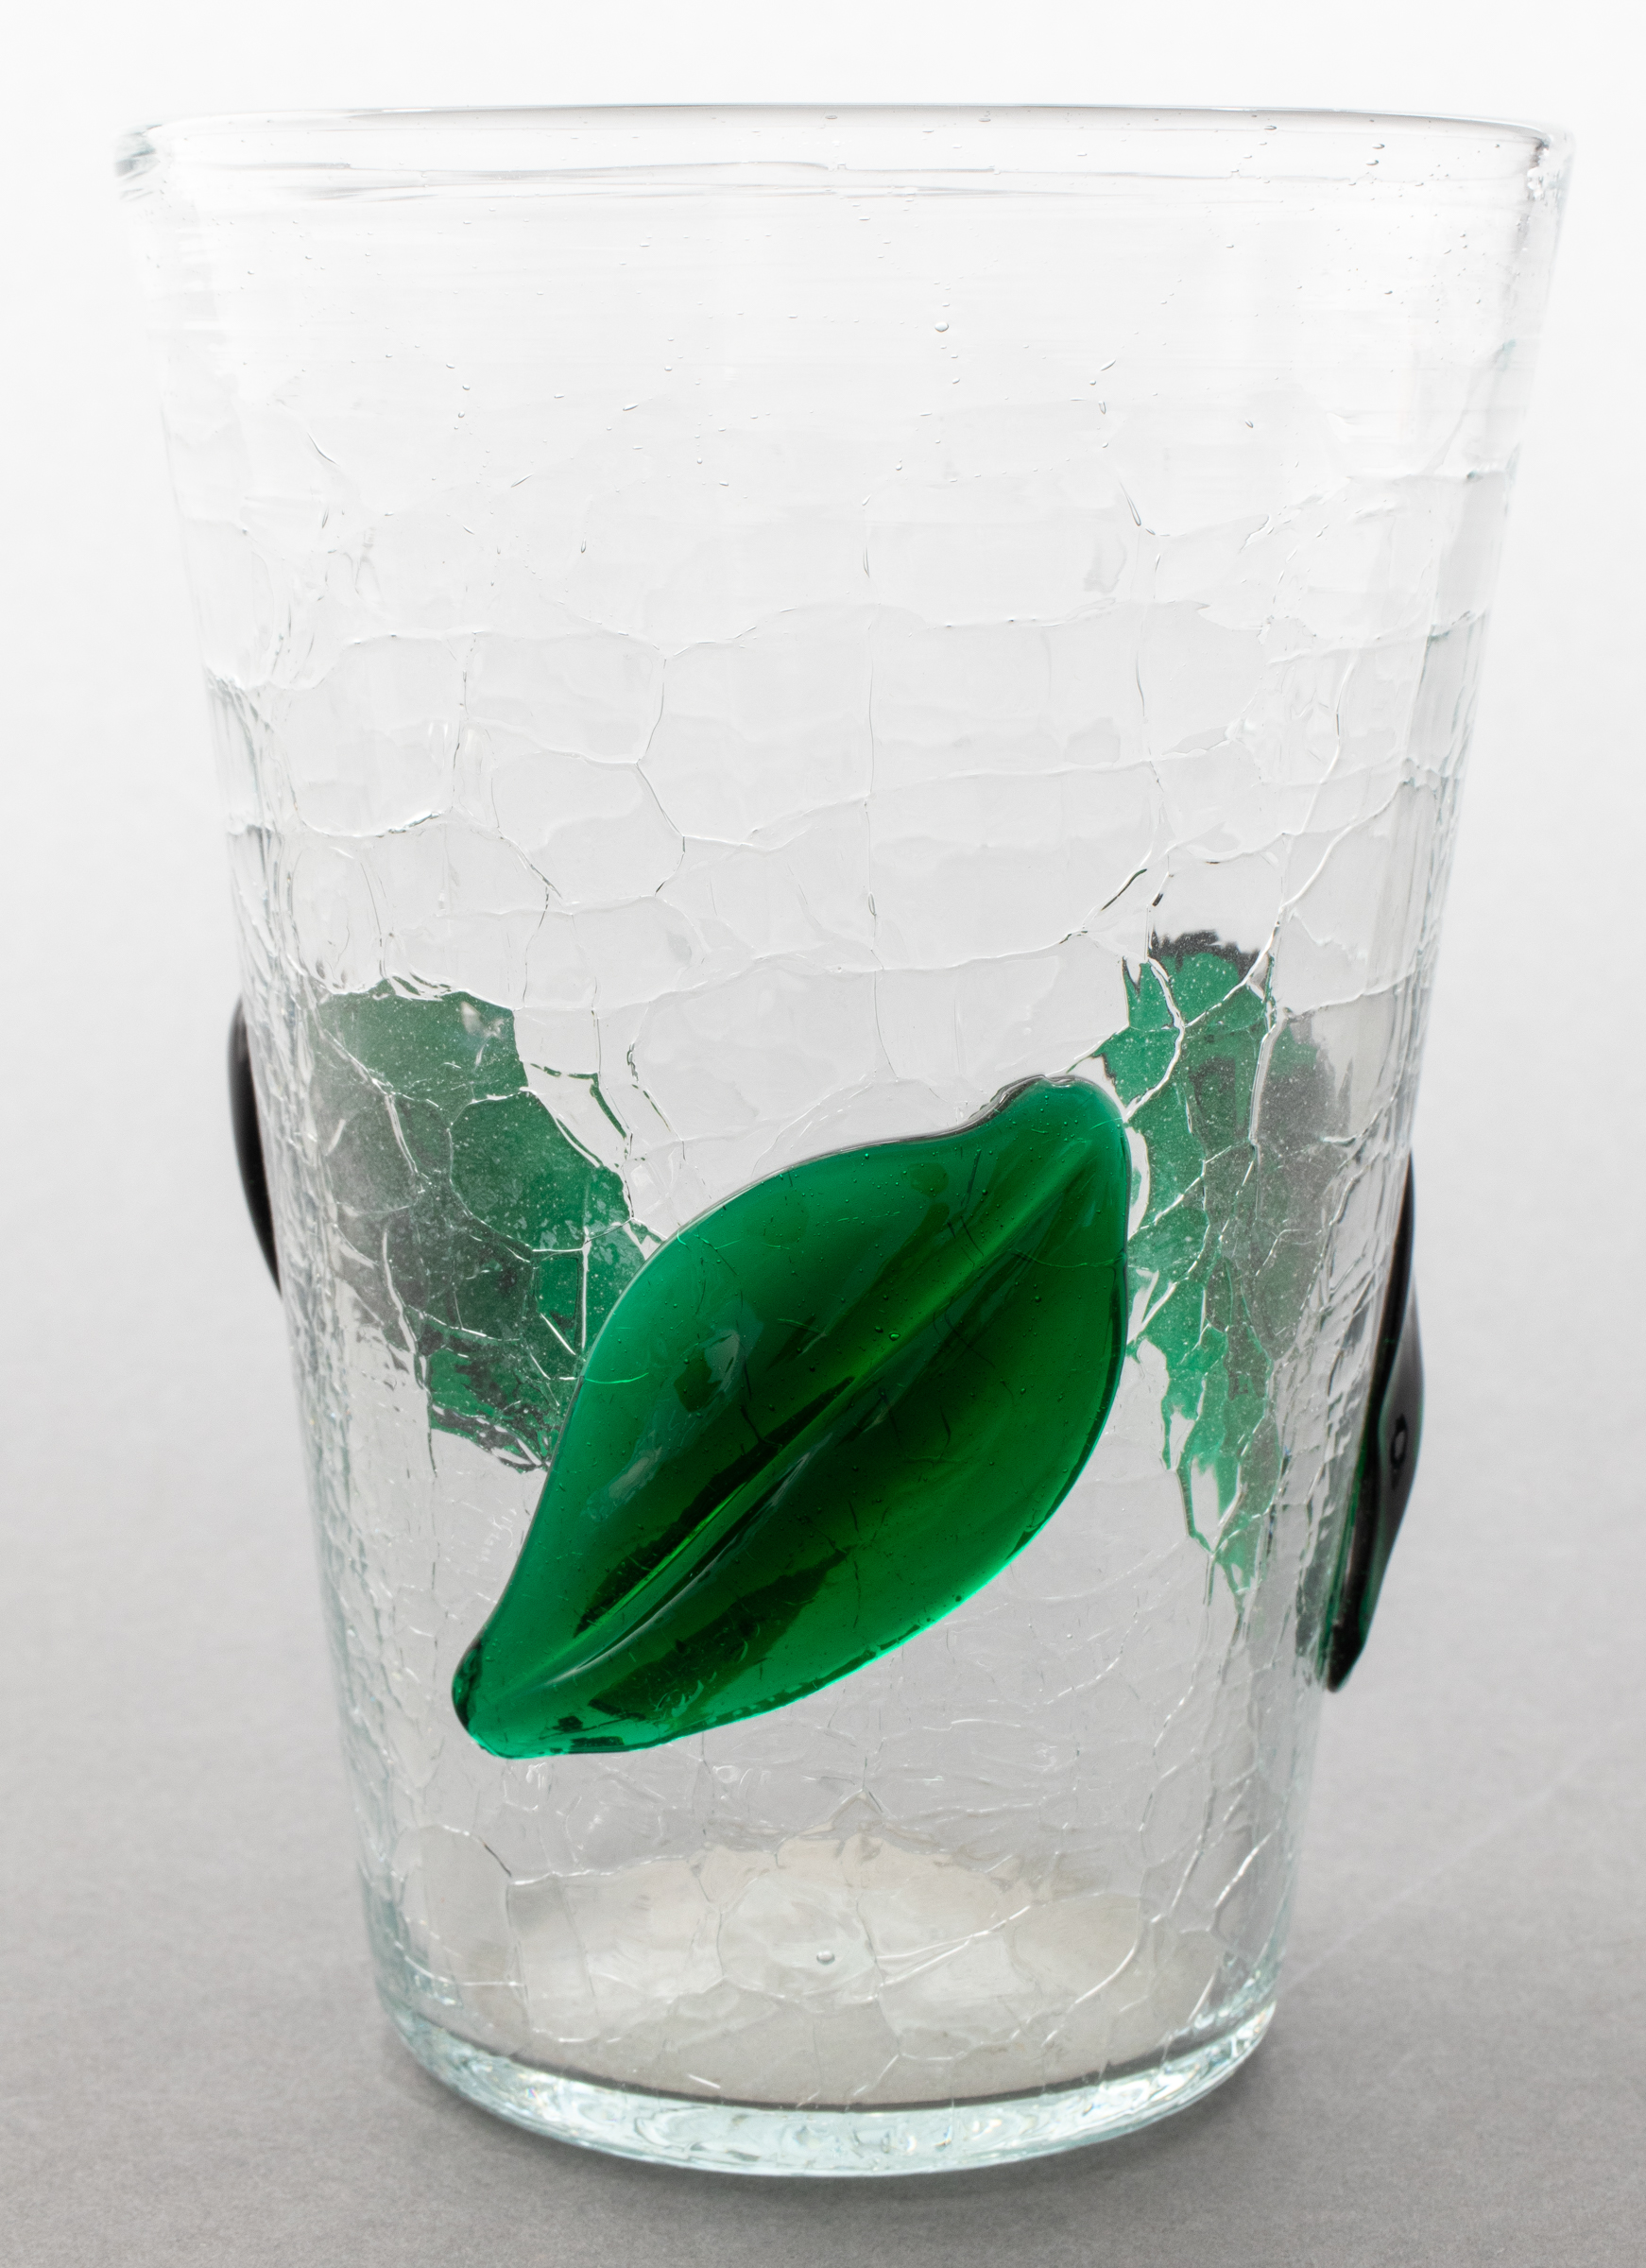 GLASS VASE WITH GREEN LEAF DESIGN 3c452c